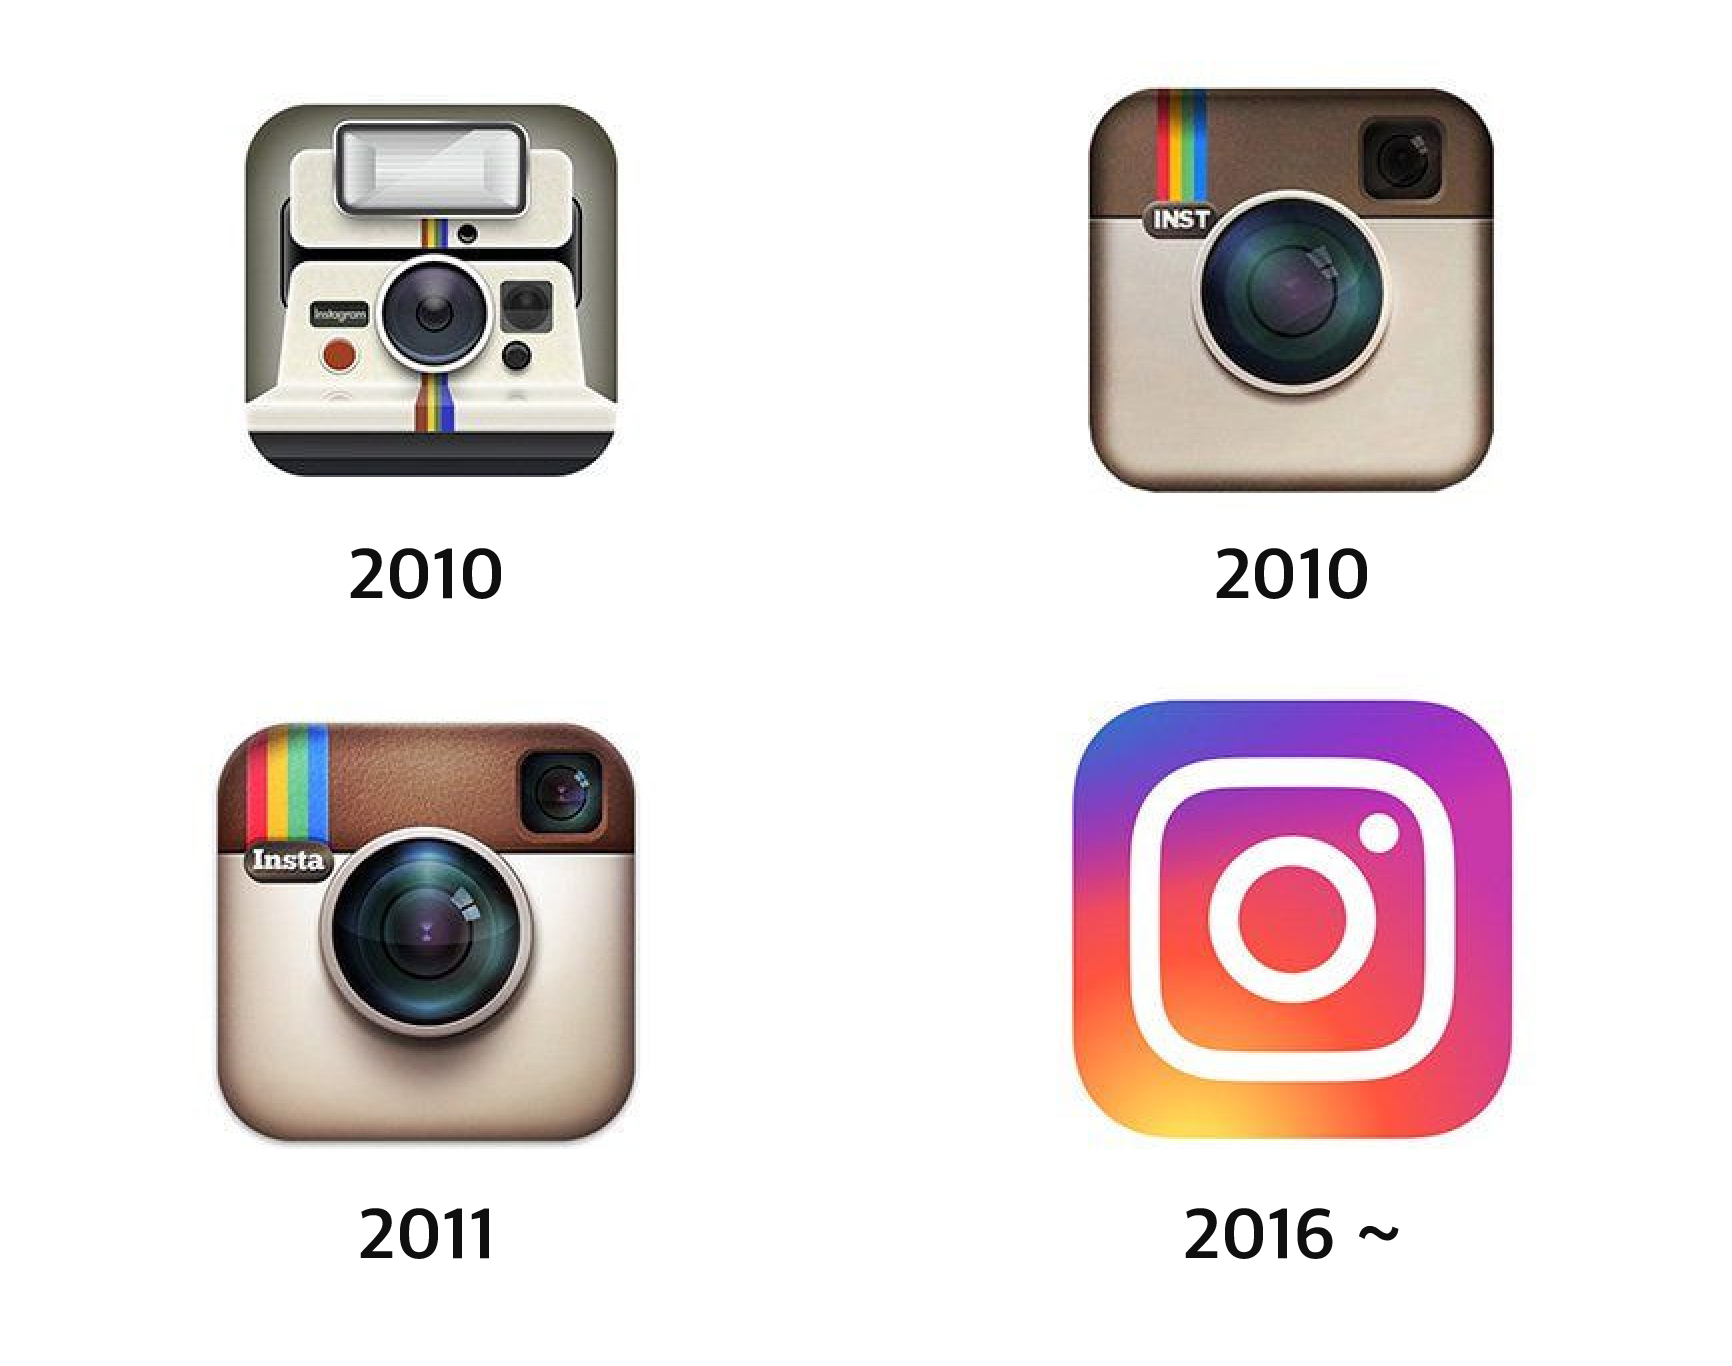 인스타그램 로고 변천사 이미지이며 각각 2010년, 2010년 후반기, 2011년, 2016년에 바뀐 4개의 아이콘 이미지